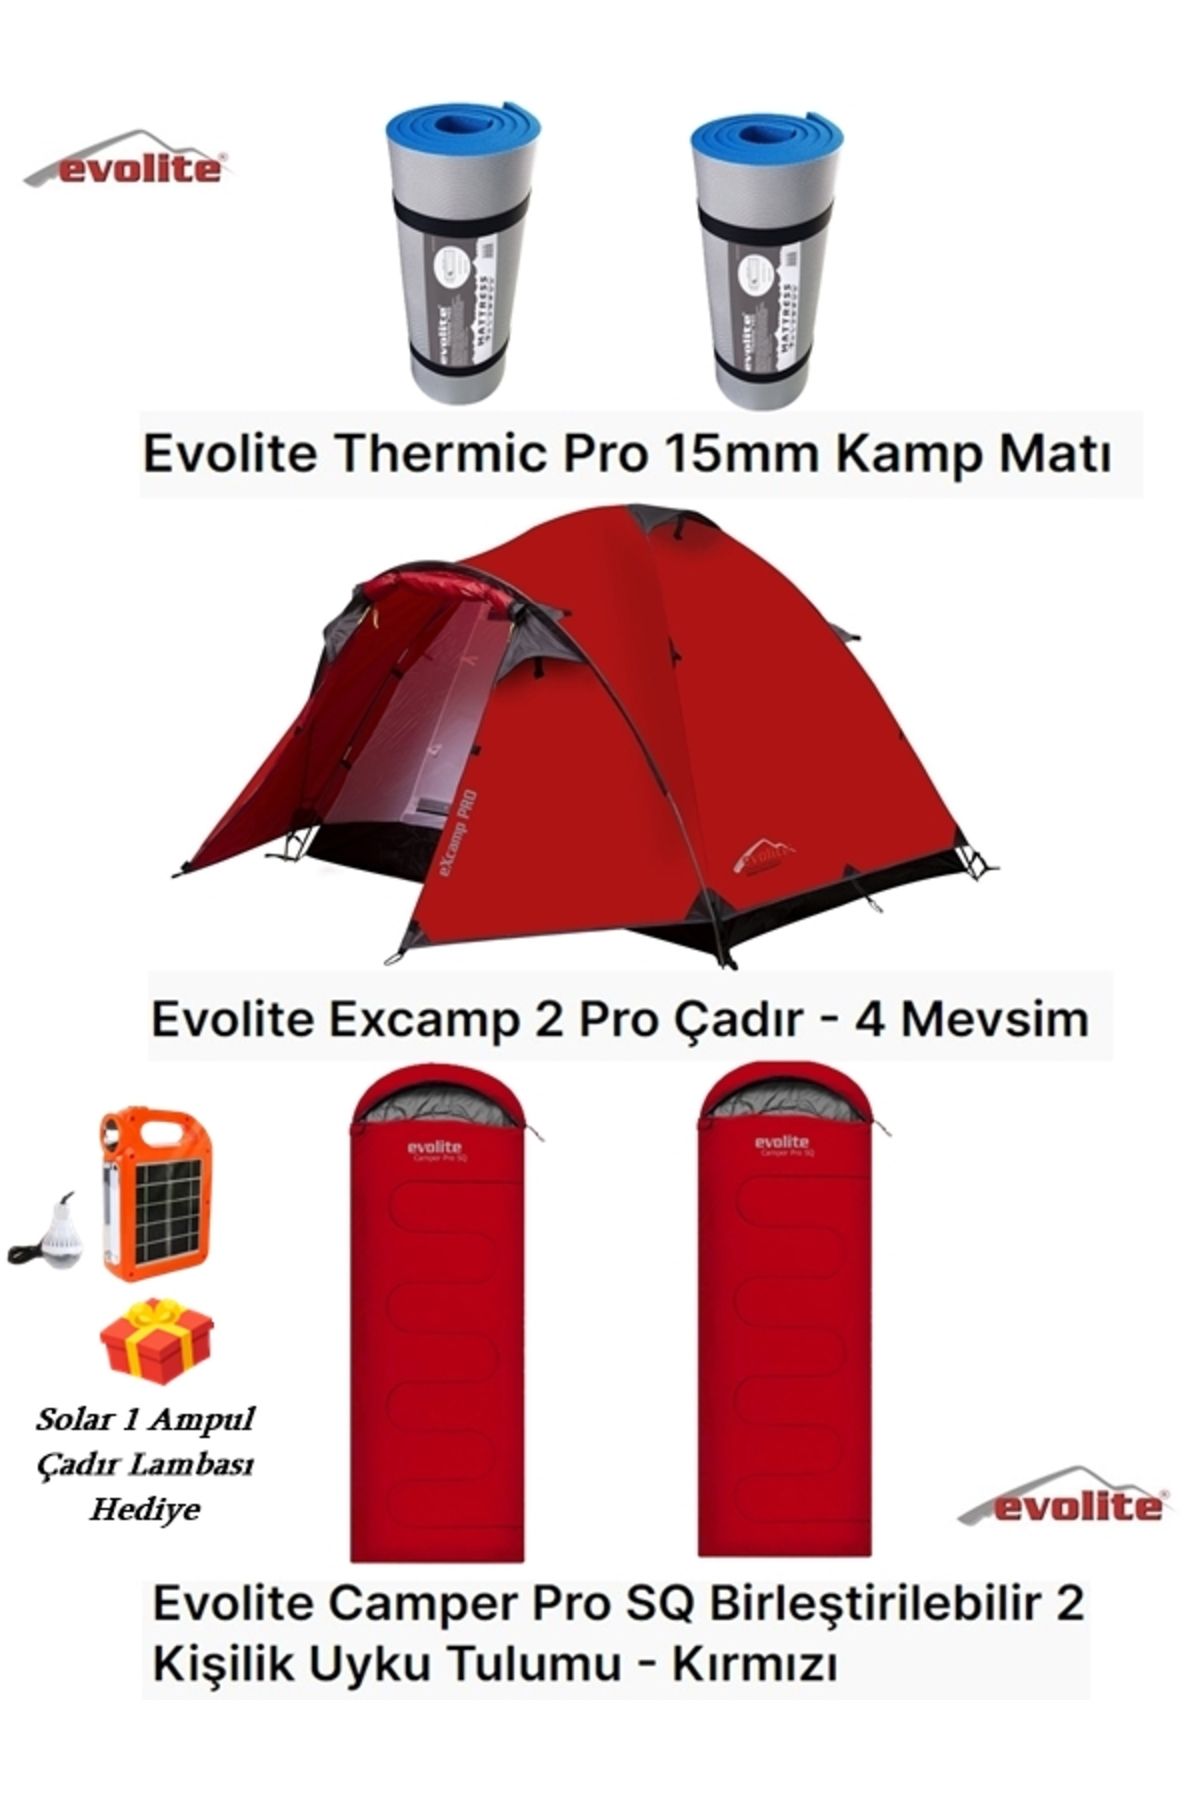 Evolite 4 Mevsim Excamp 2 Pro Çadır + 2 Kişilik Birleştirilebilir Uyku Tulumu + 2 Thermic Kamp Matı